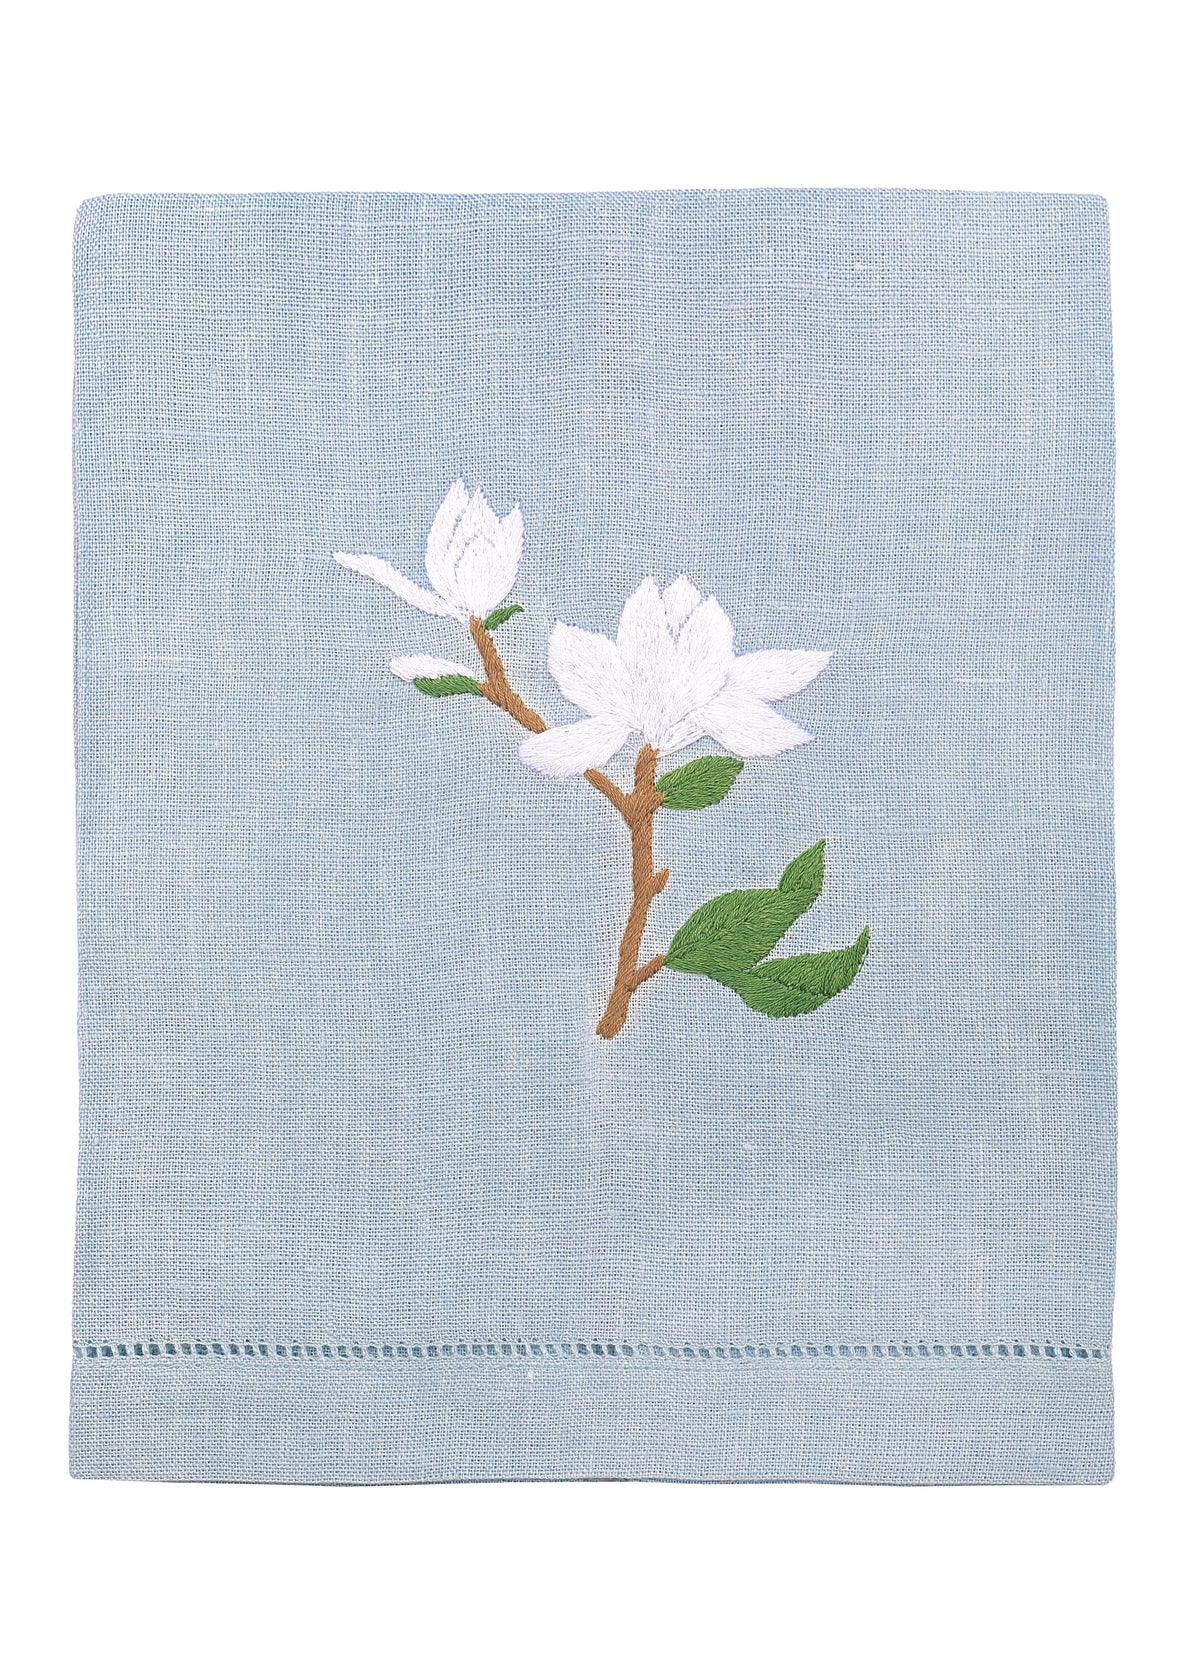 Magnolia Towel in Blue